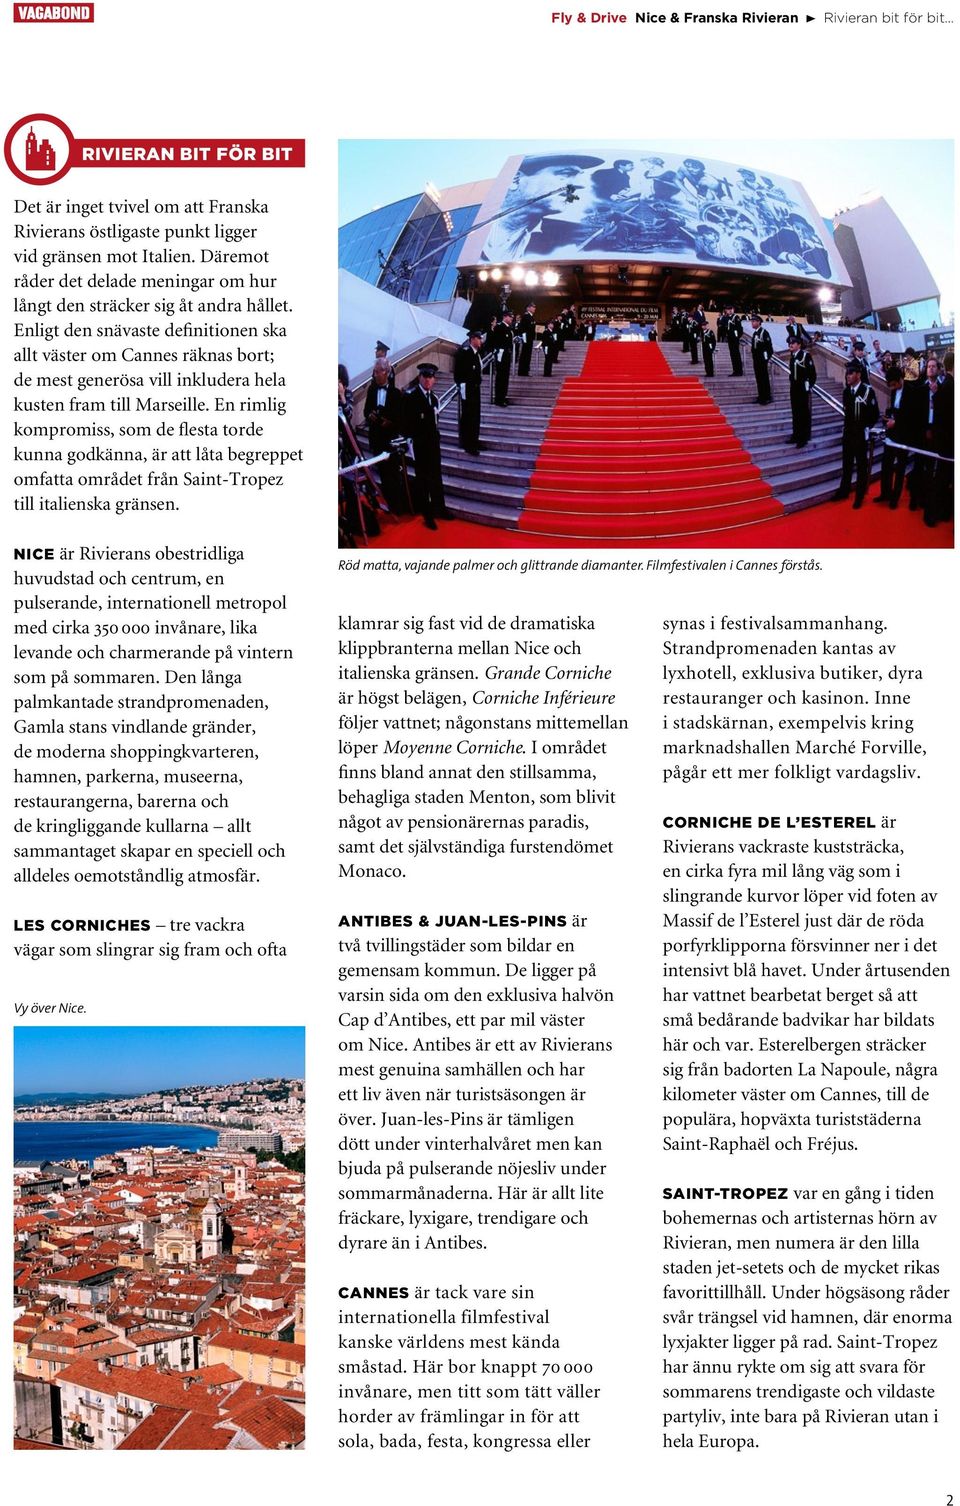 Enligt den snävaste definitionen ska allt väster om Cannes räknas bort; de mest generösa vill inkludera hela kusten fram till Marseille.